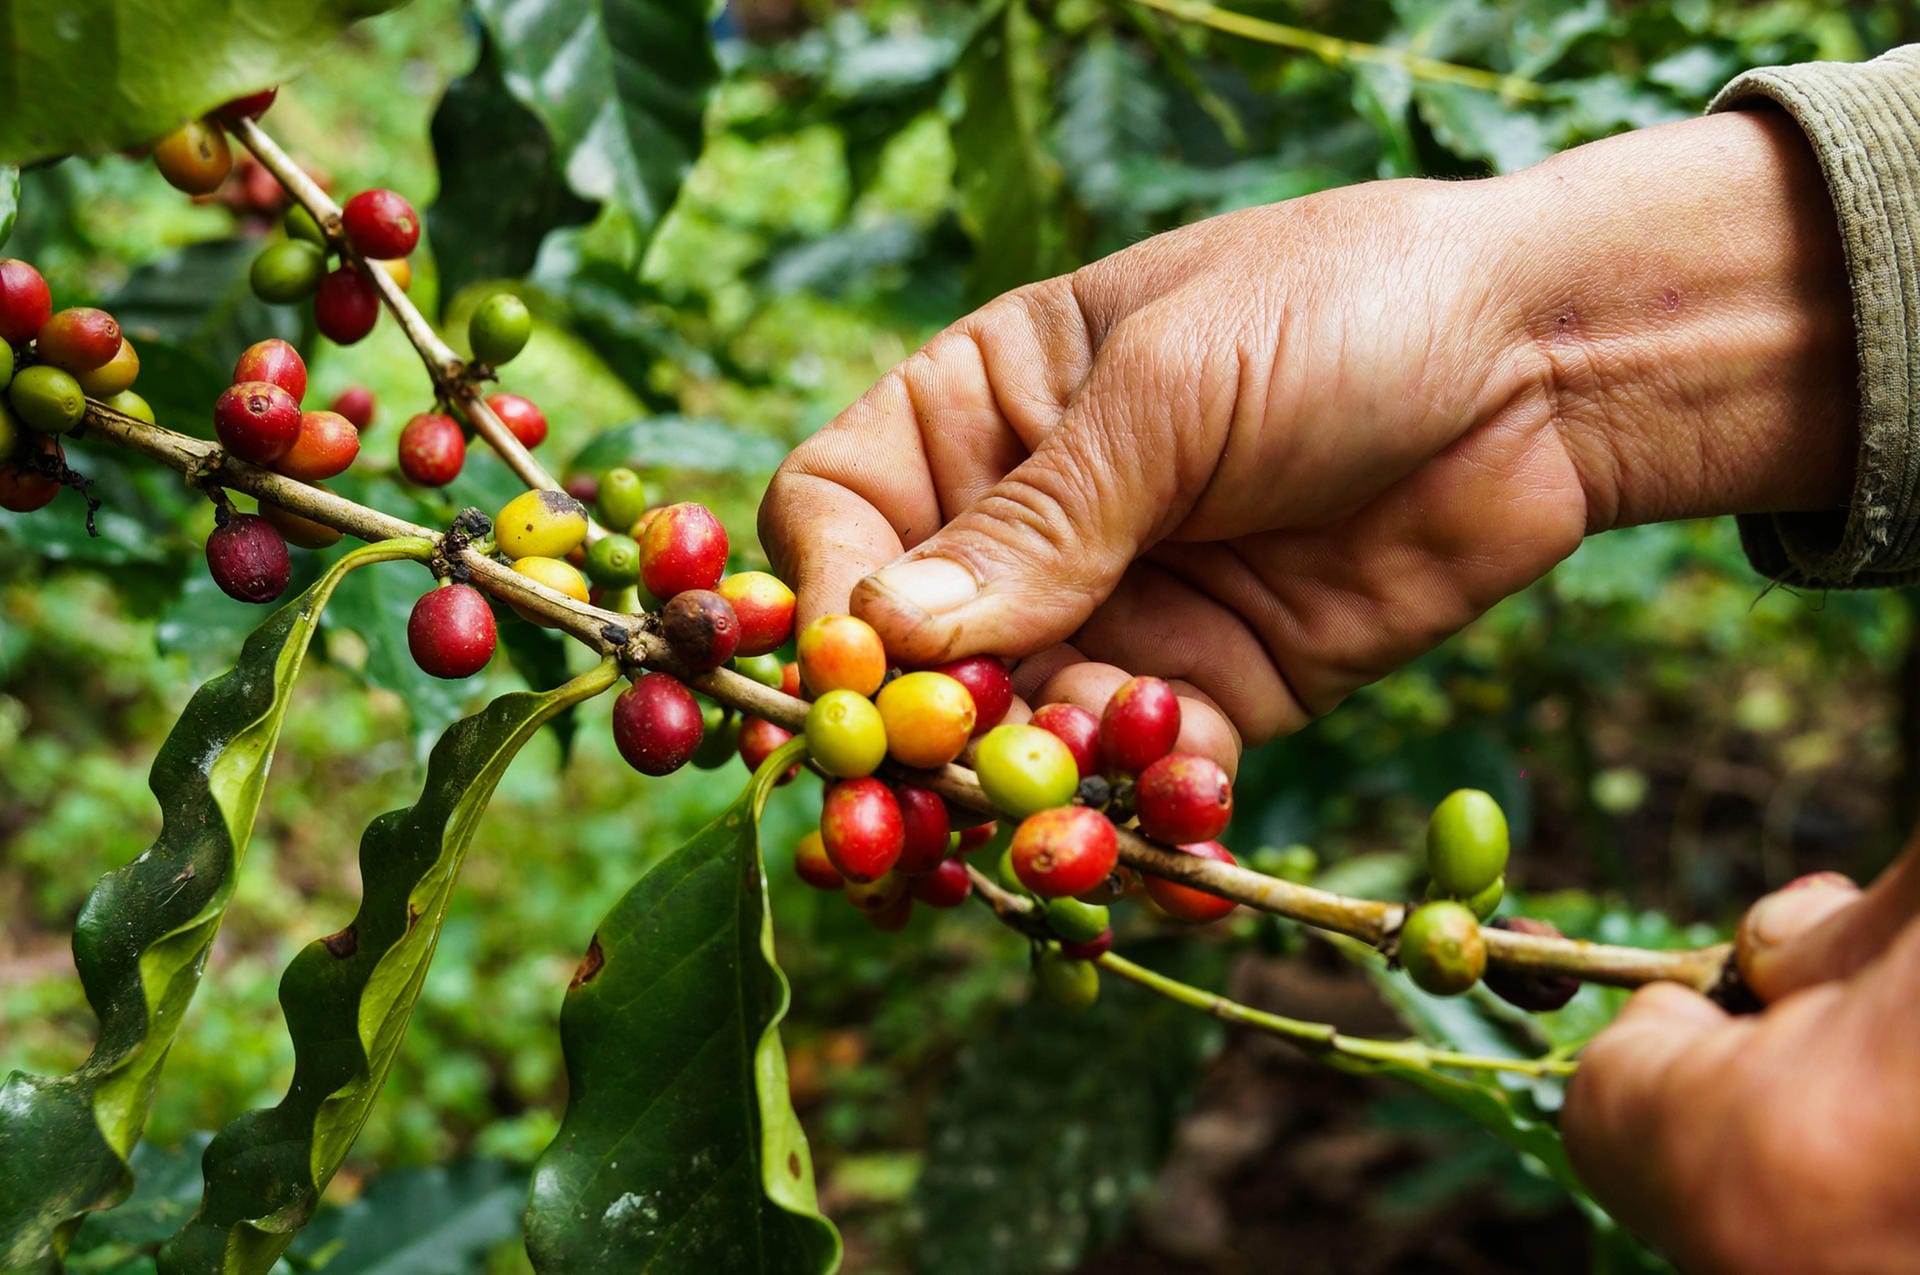 Bei uns kennt man nur die Kaffeebohnen, doch in Südamerika verwendet man auch die Kaffeefrucht für das Erfrischungsgetränk Cascara.